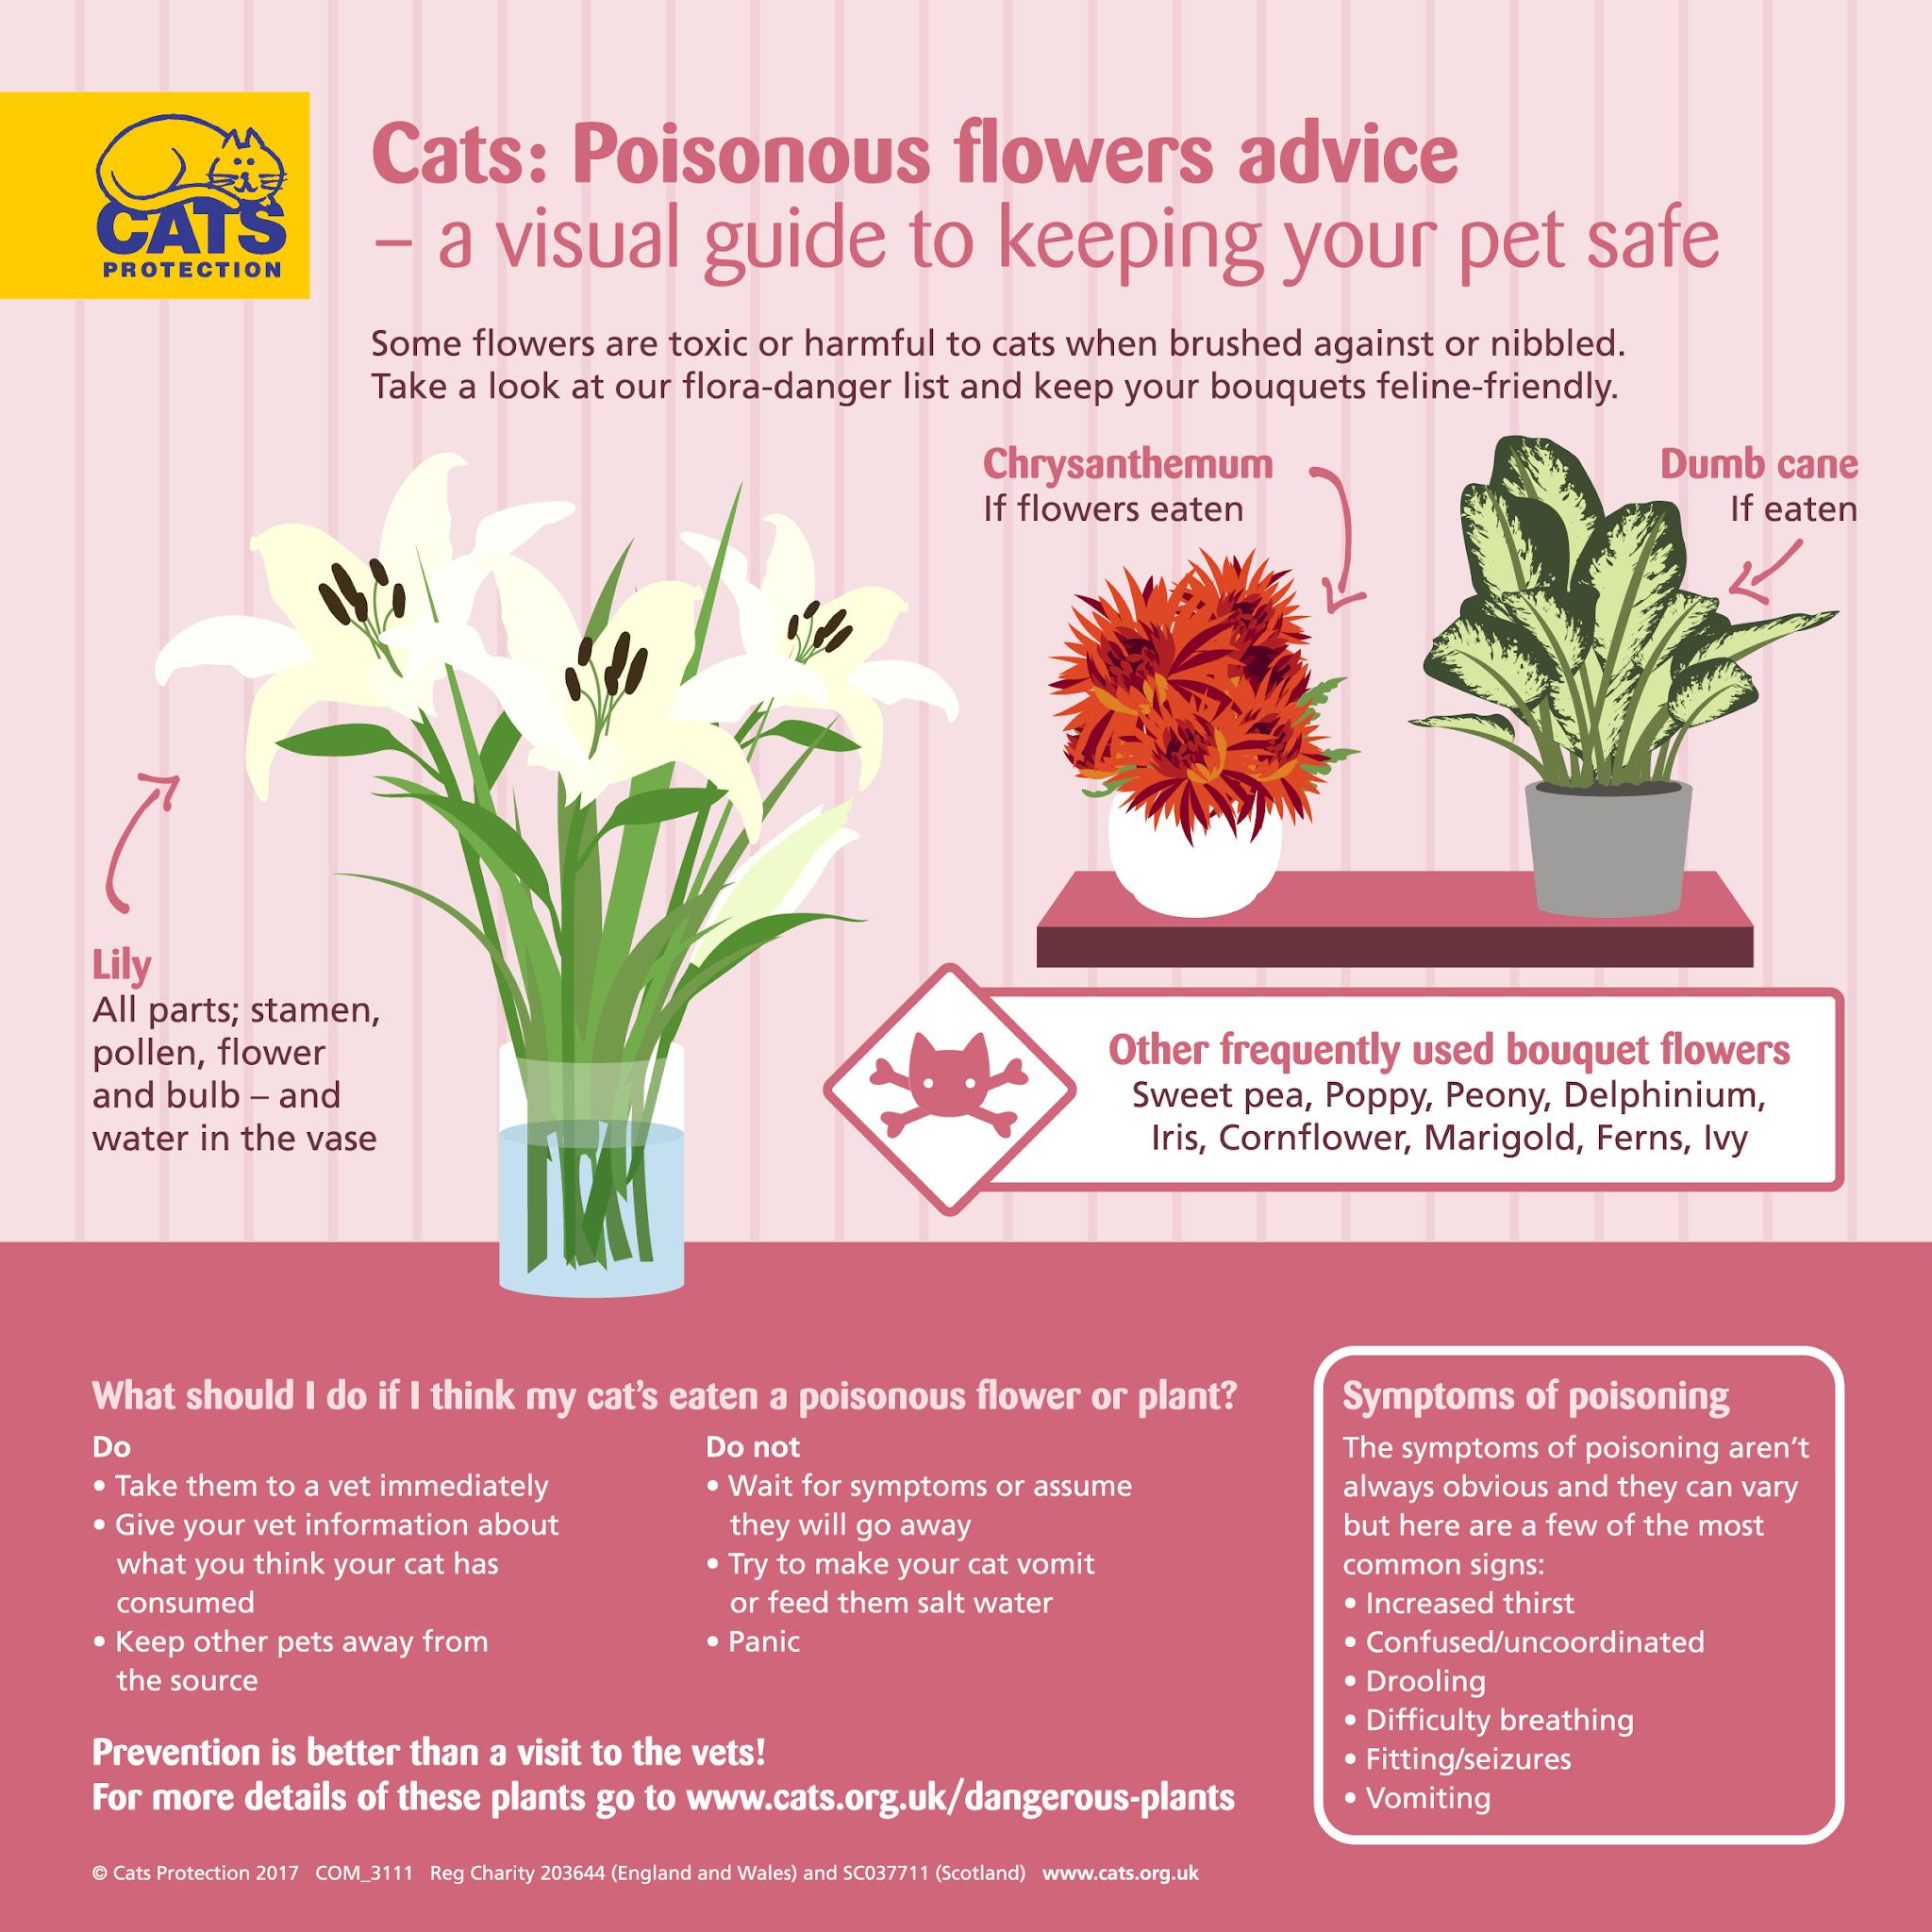 Какие цветы безопасны для кошек в День матери?